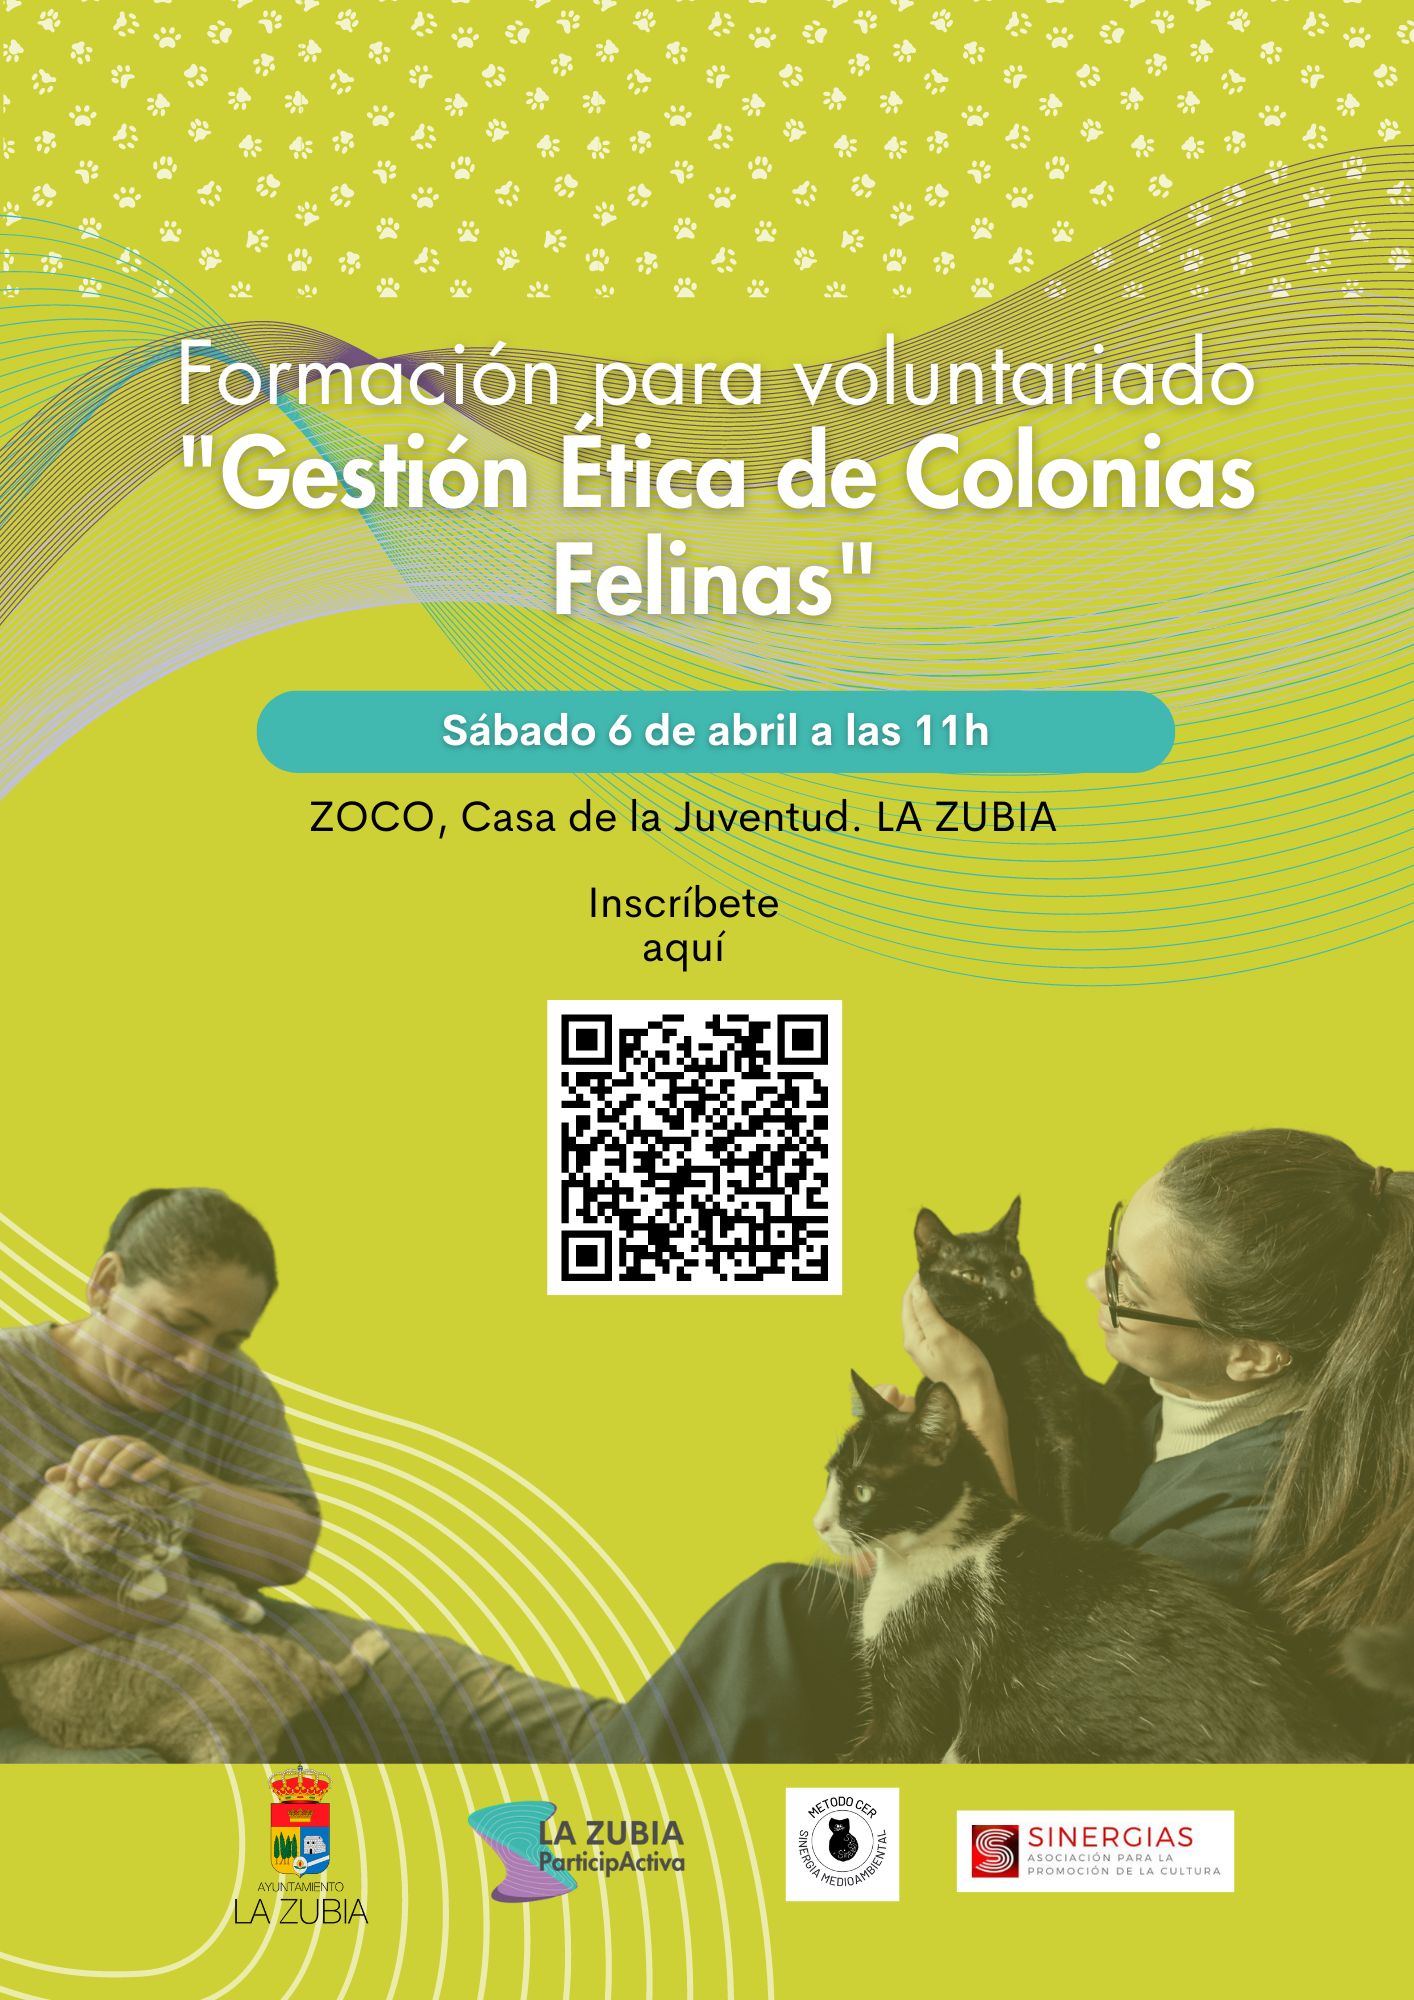 Formación: voluntariado en gestión de colonias felinas